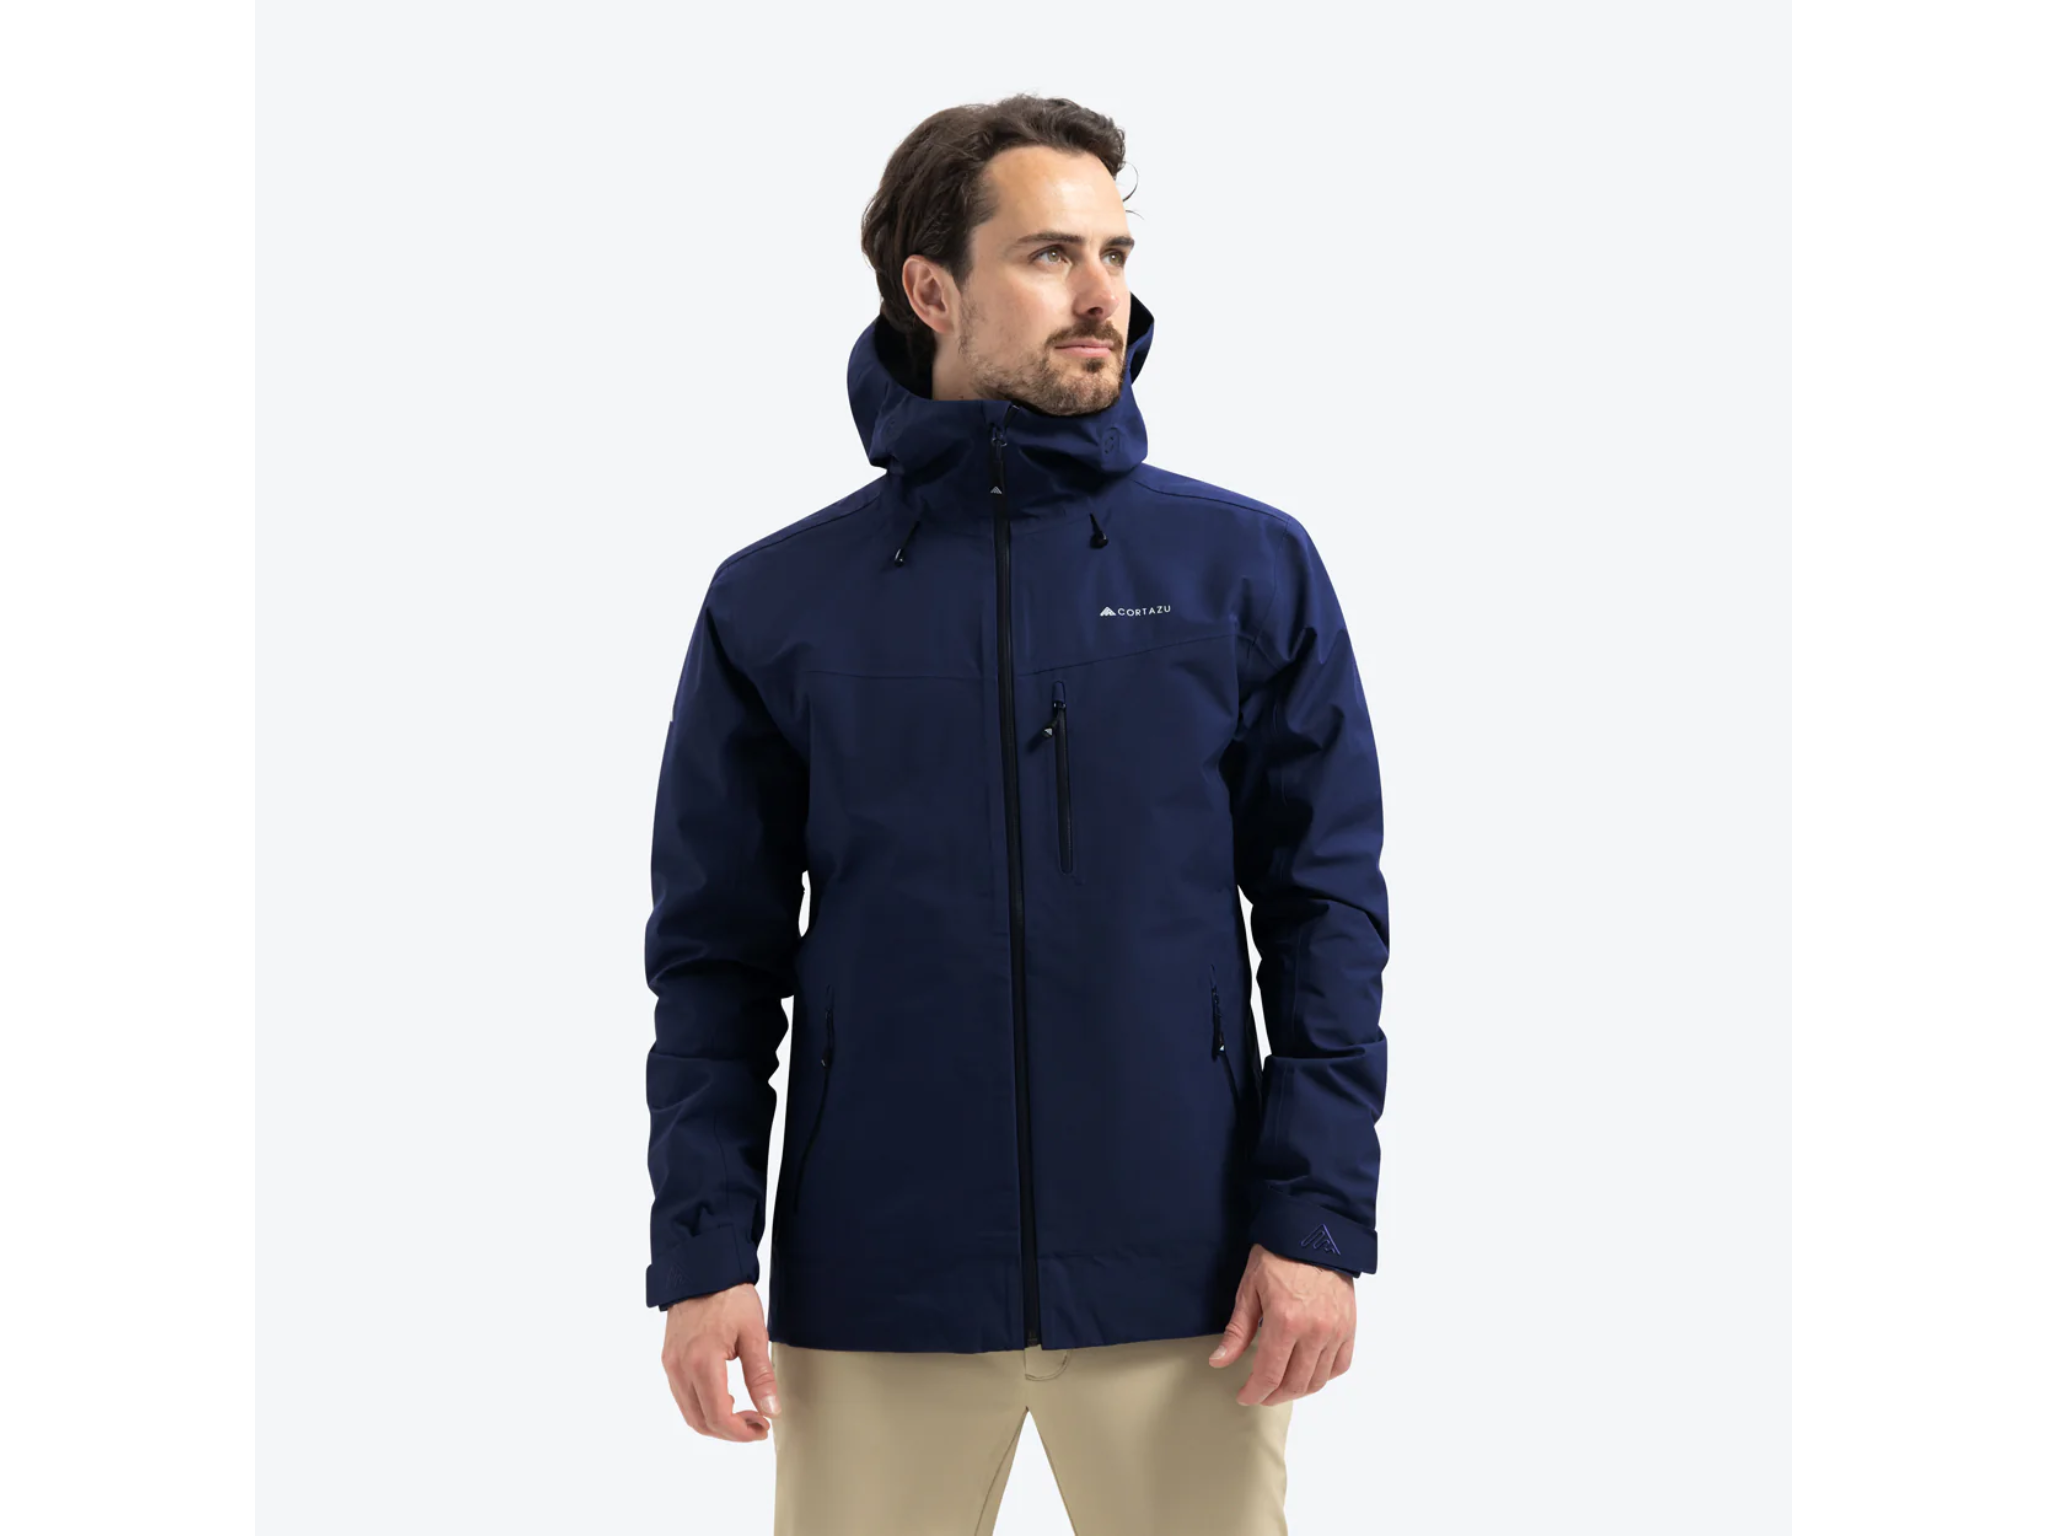 Men's Mid-Layer Jackets - Cortazu - Premium Outdoor Clothing